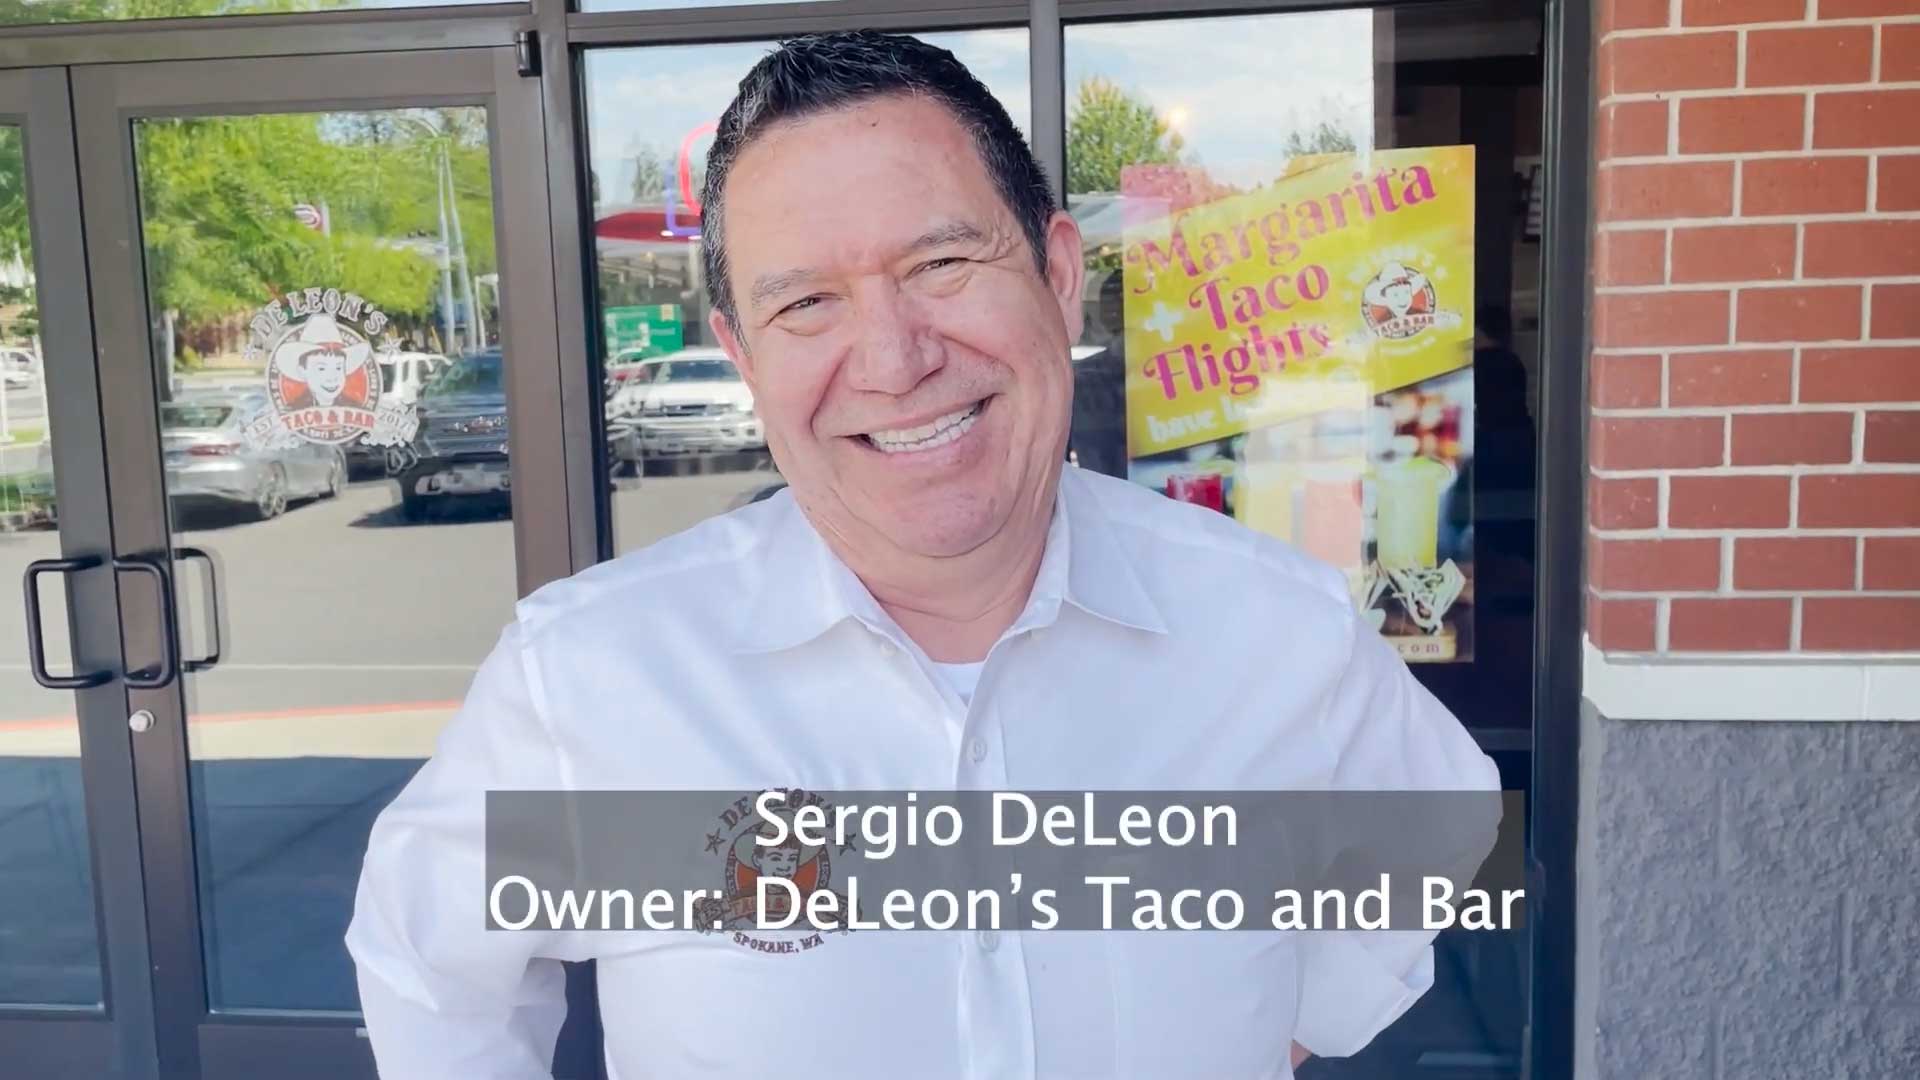 Sergio DeLeon Owner of Deleon's Taco Bar